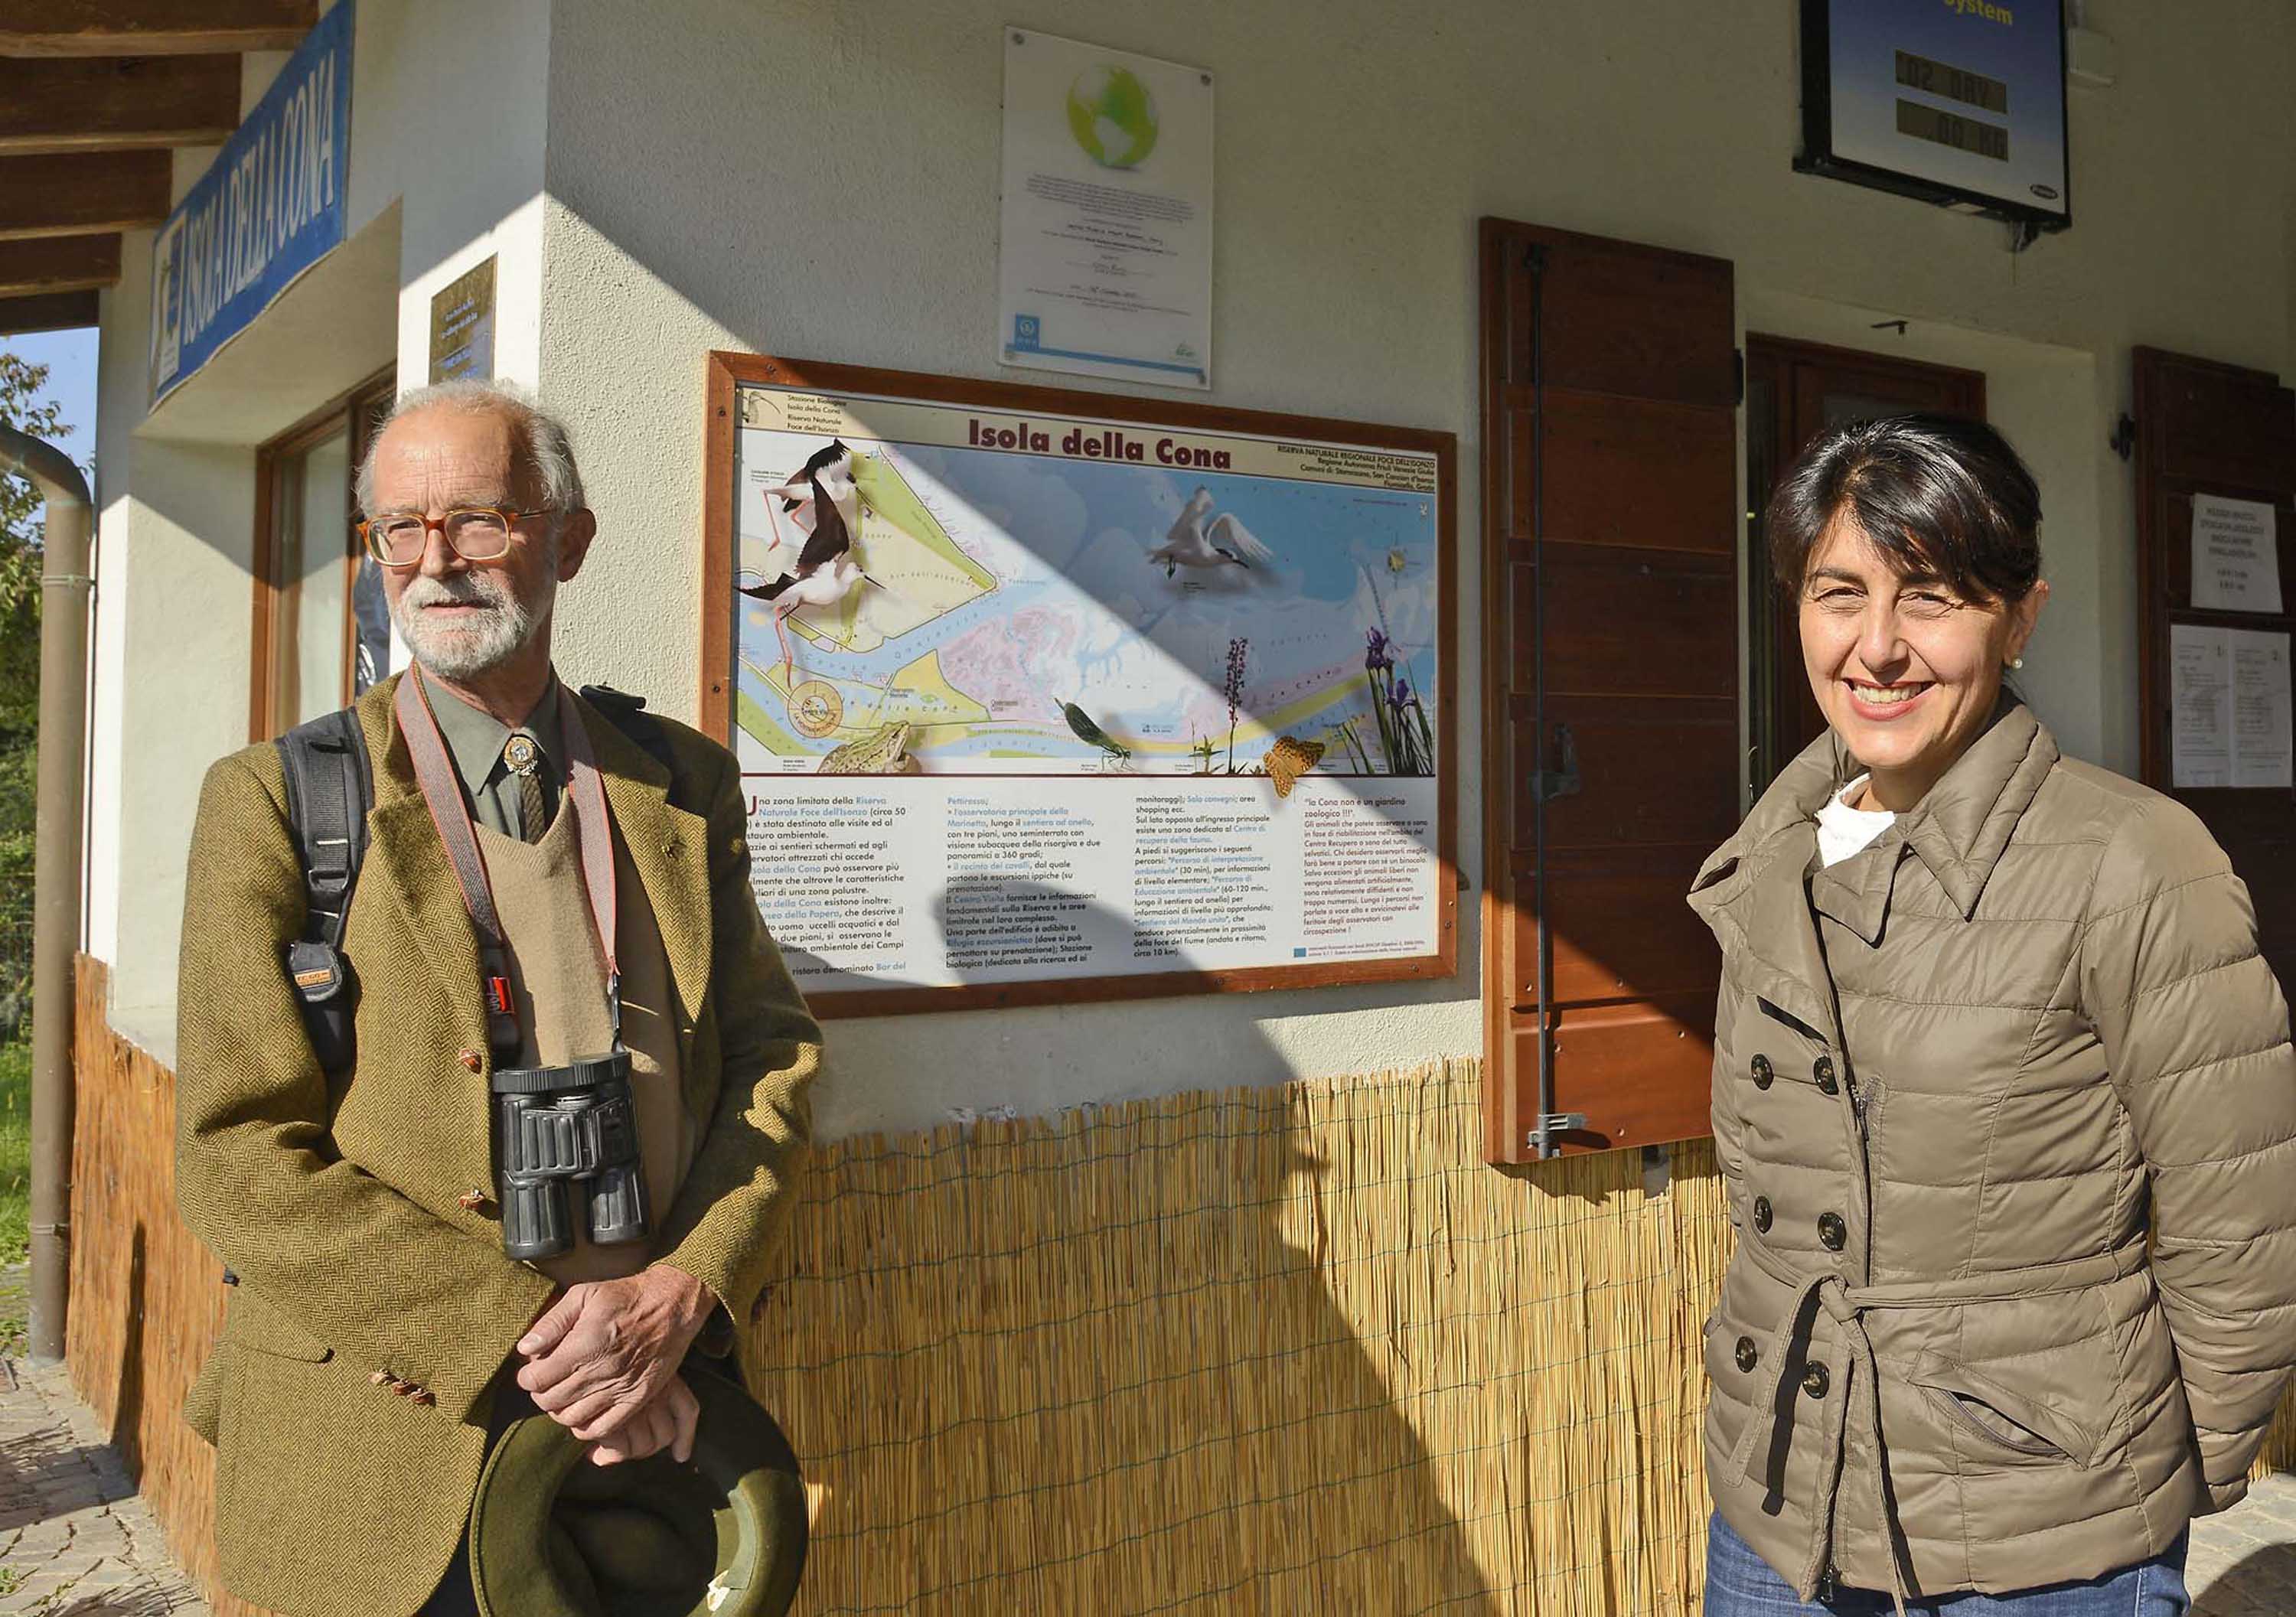 Fabio Perco (Coordinatore scientifico Isola della Cona) accompagna Mariagrazia Santoro (Assessore regionale Pianificazione territoriale) in visita all'Isola della Cona nella Riserva naturale della Foce dell'Isonzo. (03/10/13)